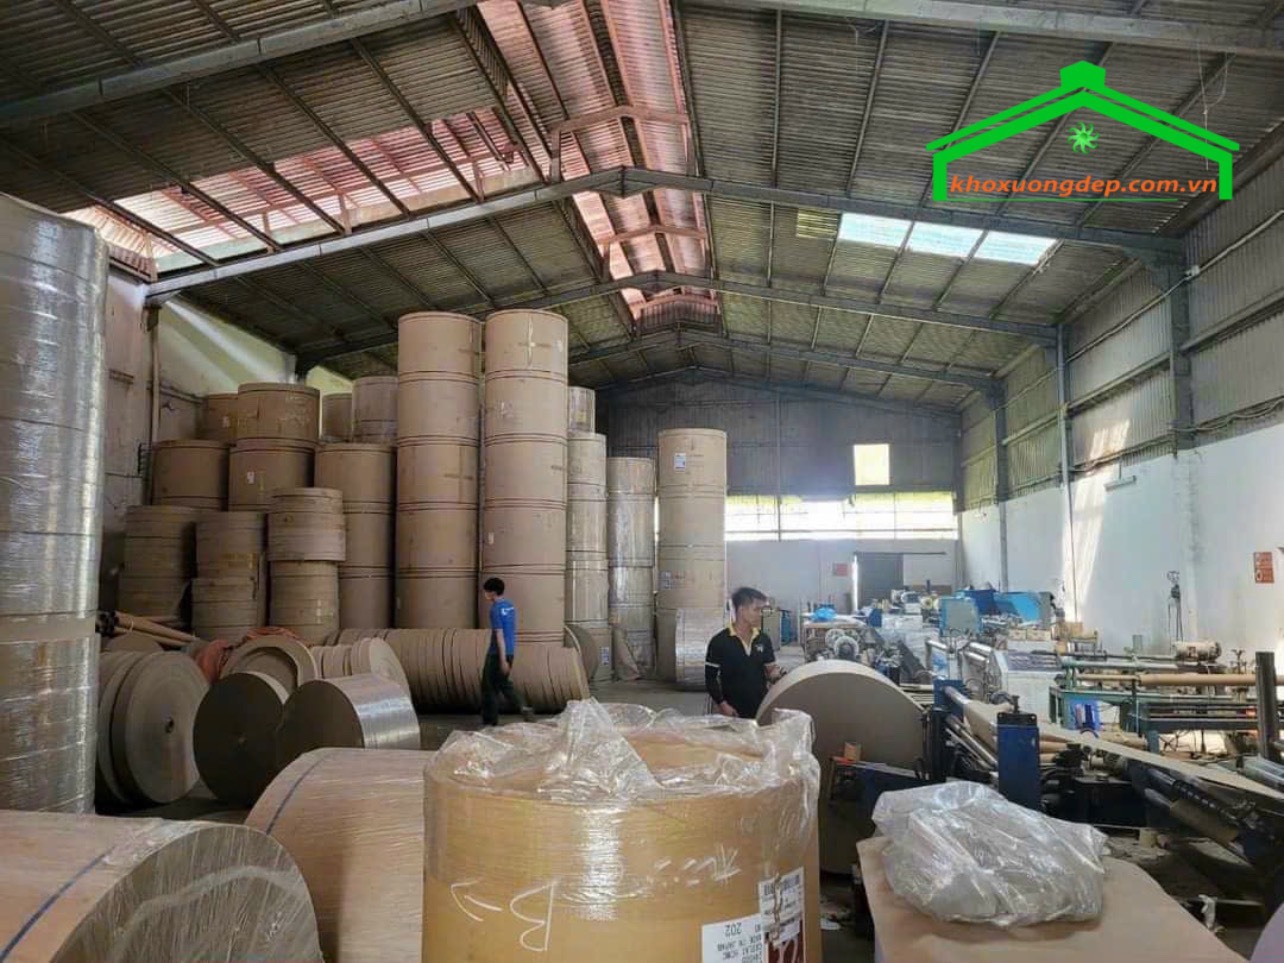 Cho thuê kho xưởng chứa hàng và sản xuất quận Bình Tân